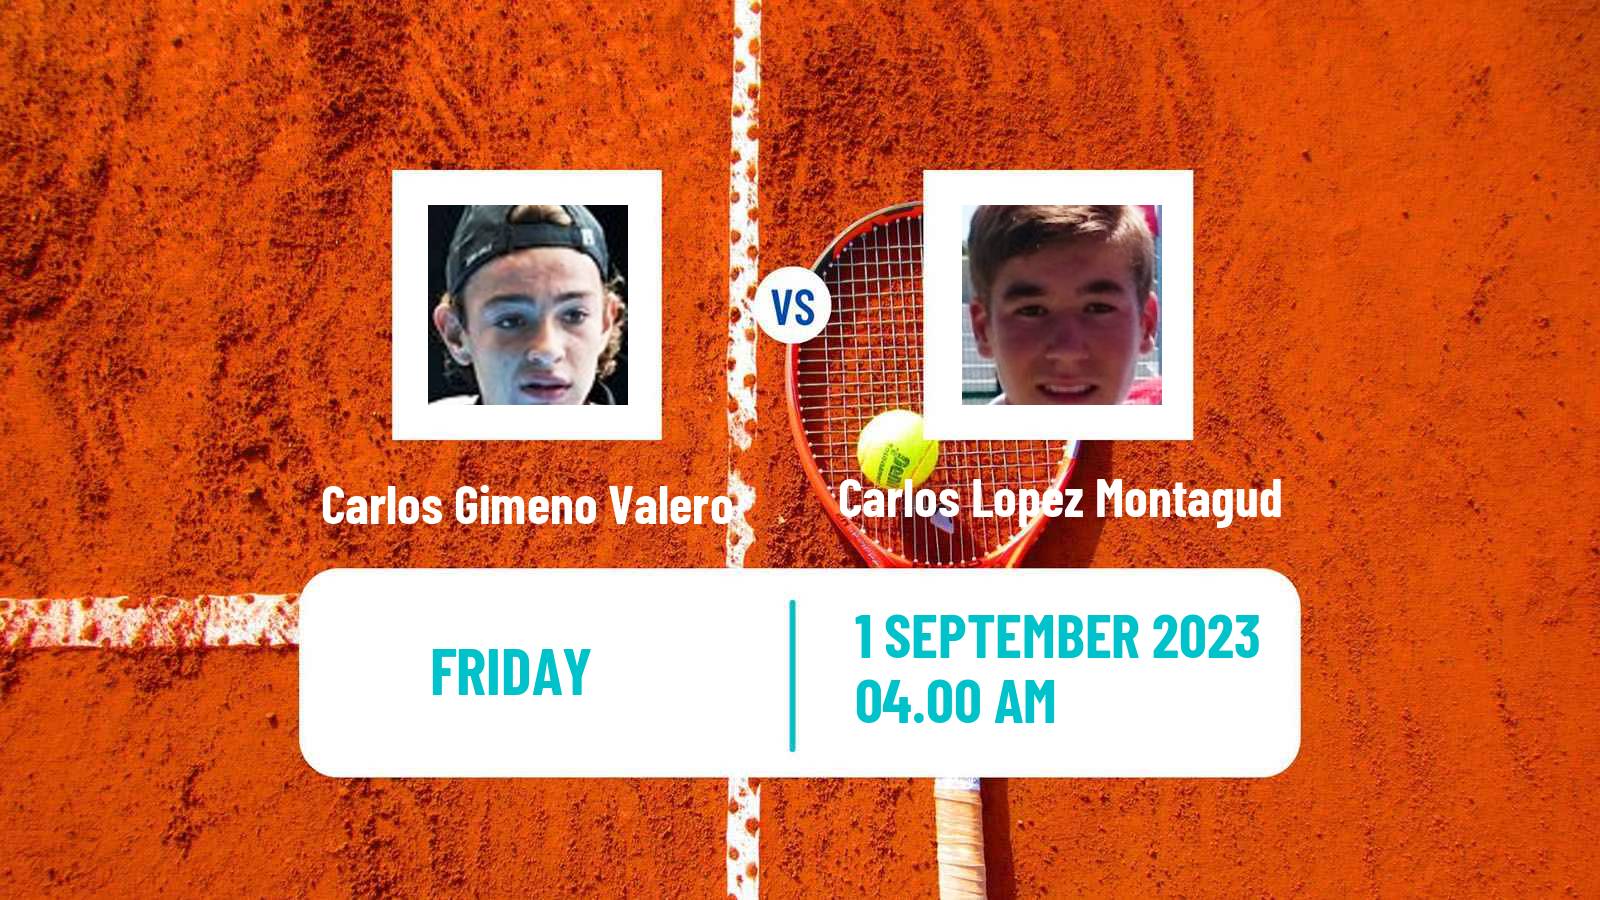 Tennis ITF M25 Oviedo Men Carlos Gimeno Valero - Carlos Lopez Montagud